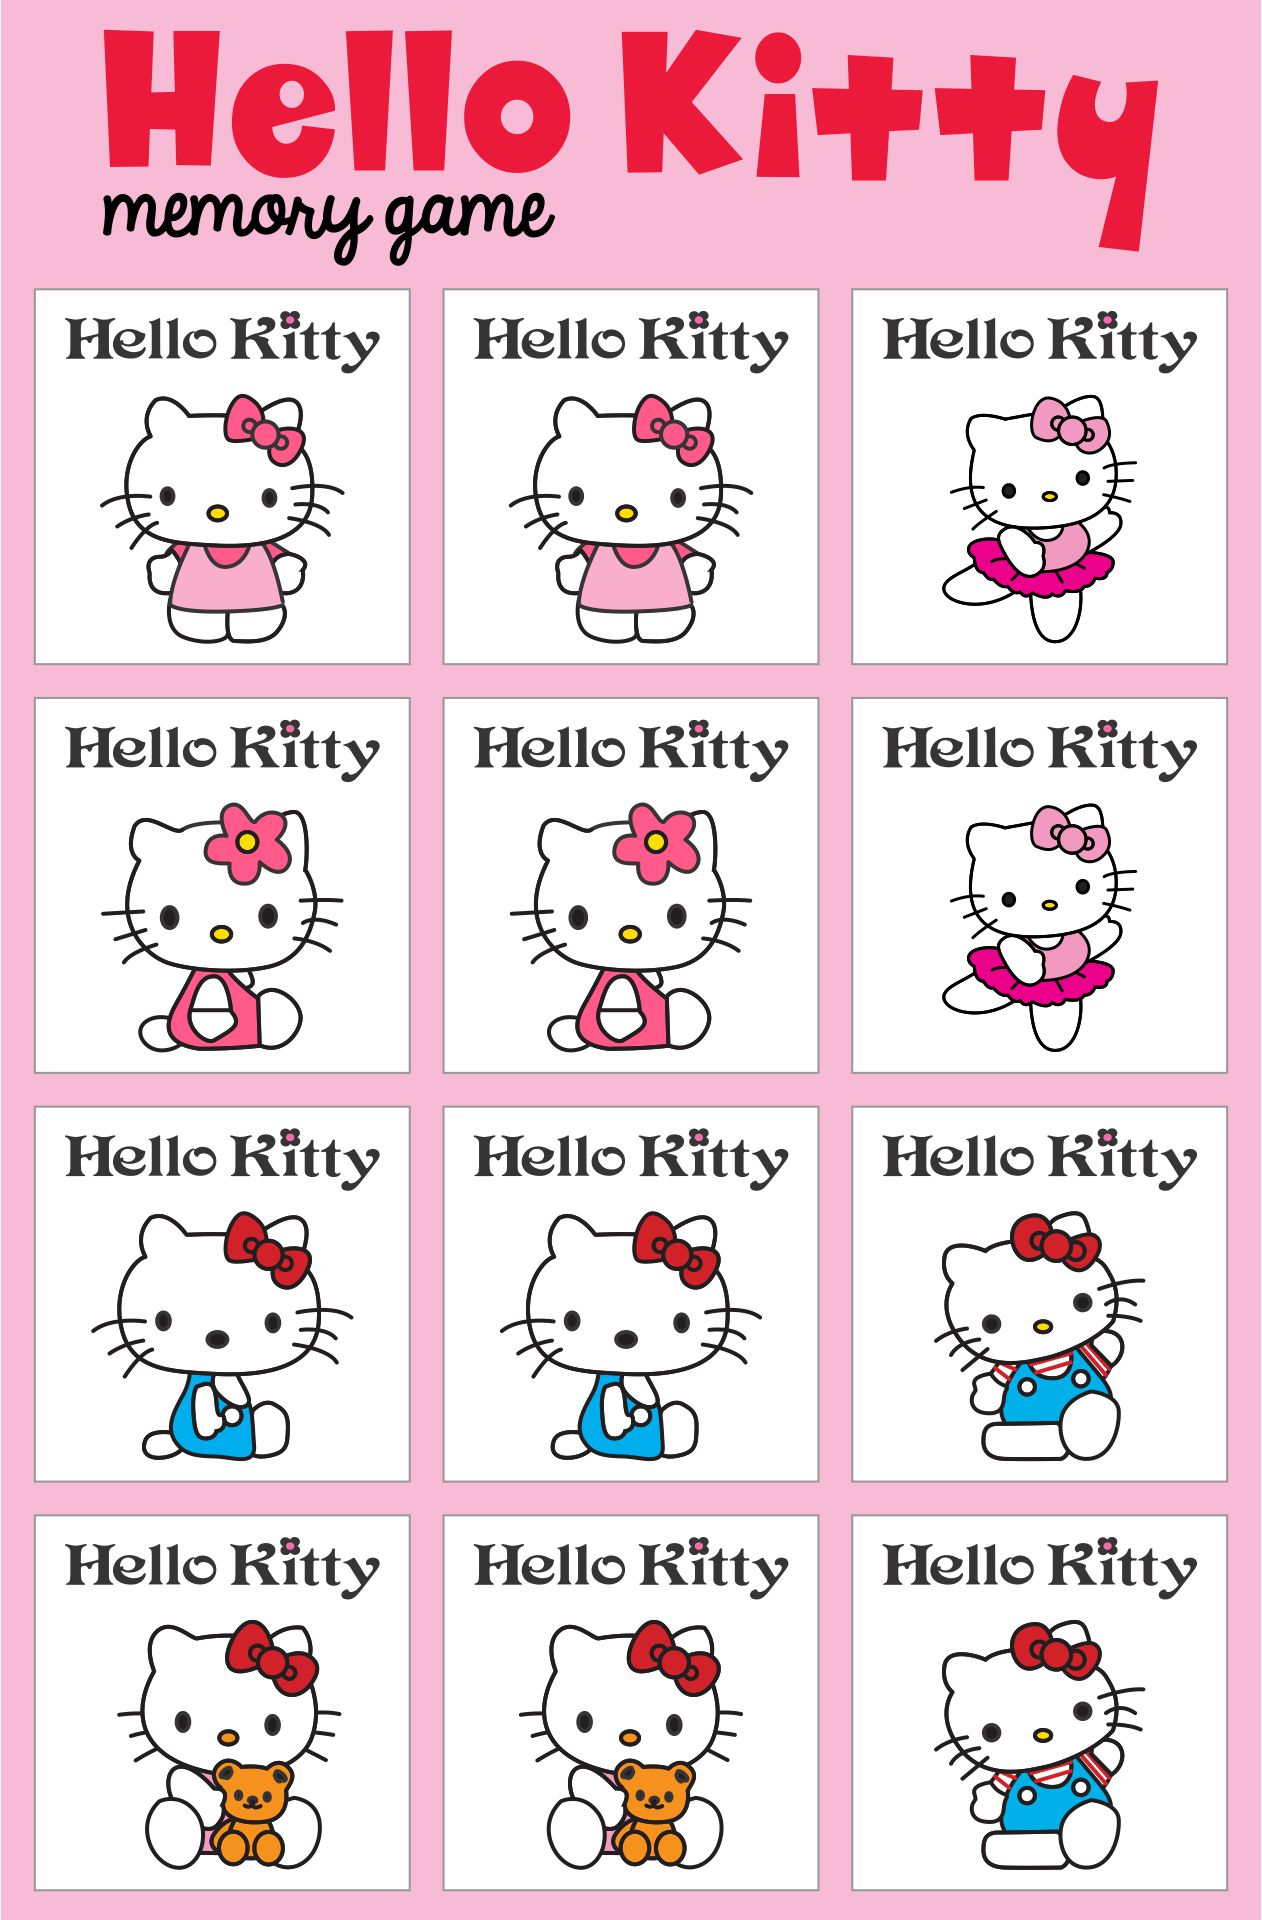 Printable Hello Kitty Birthday Party Games